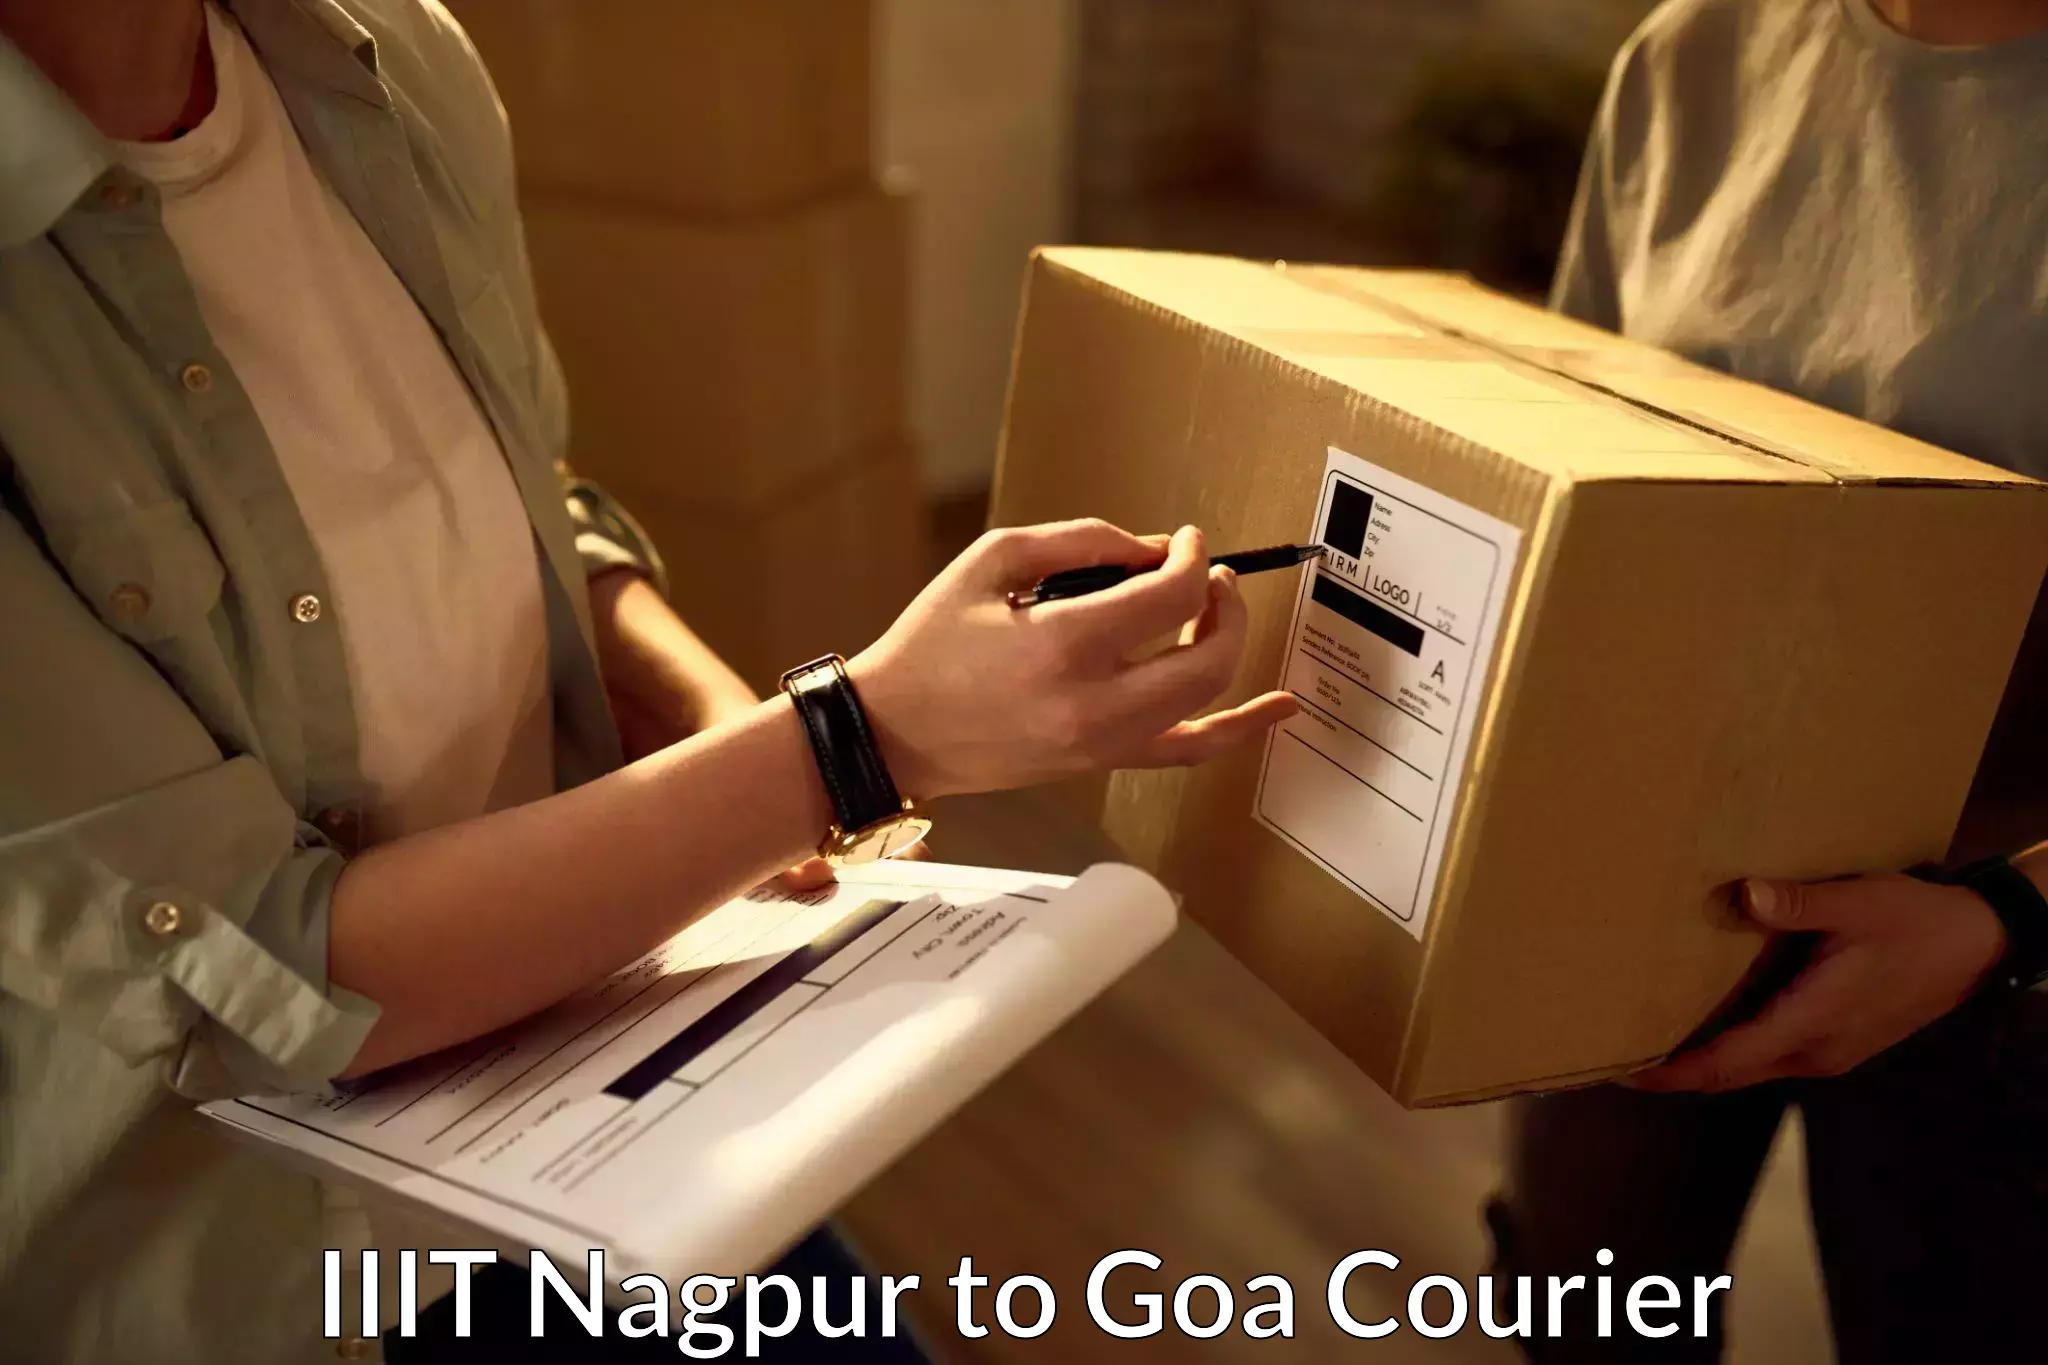 Express postal services IIIT Nagpur to NIT Goa